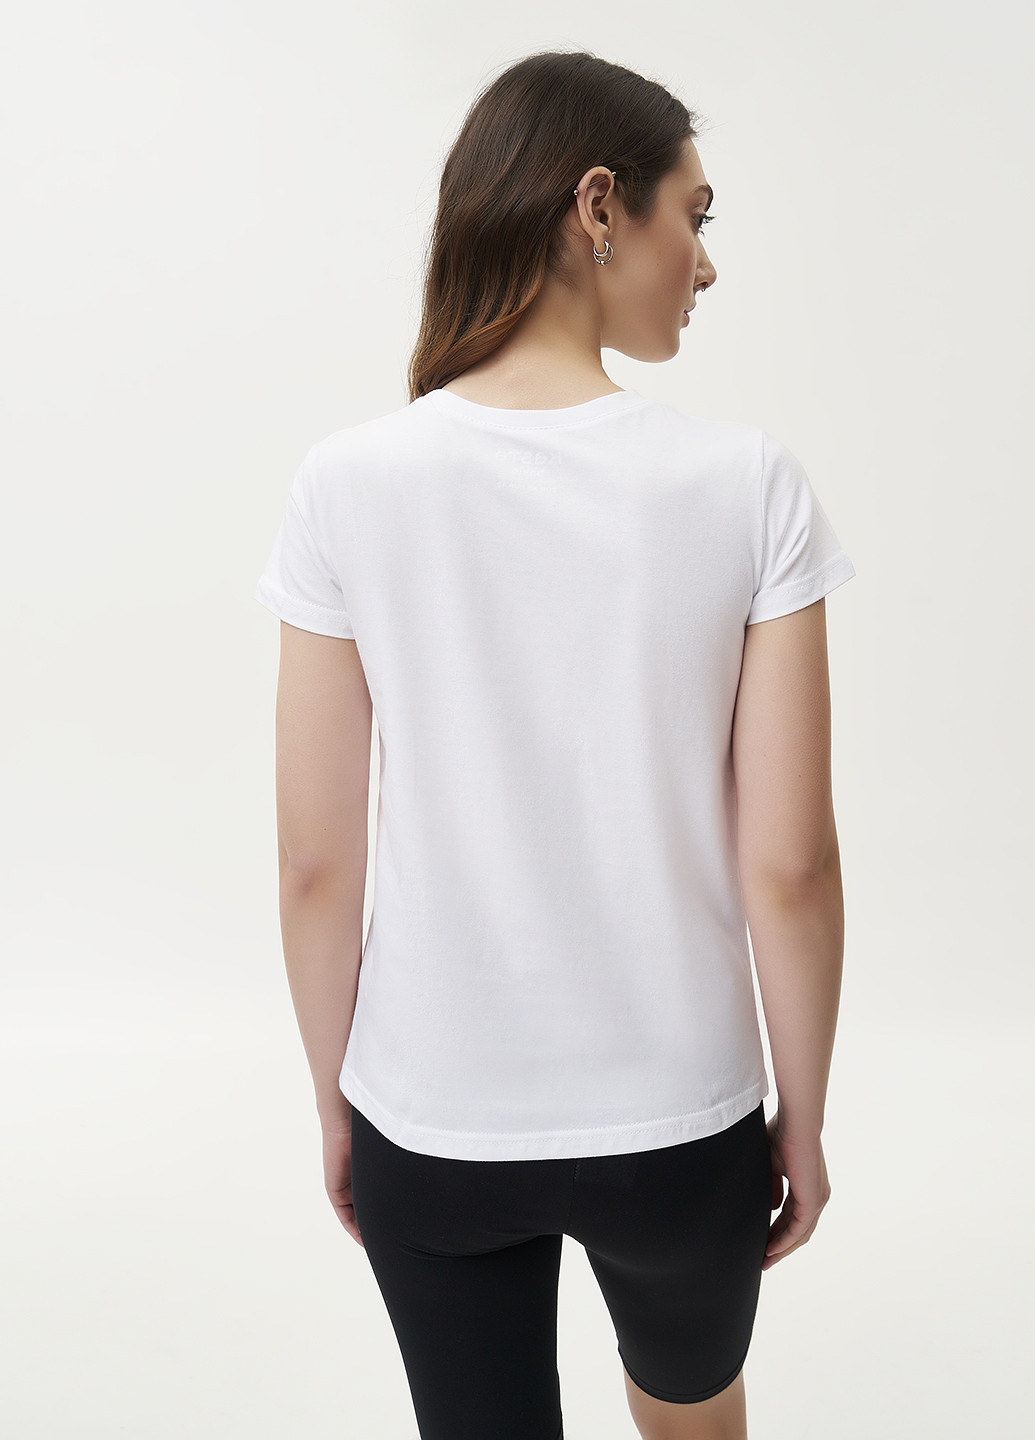 Біла літня футболка жіноча базова hello KASTA design